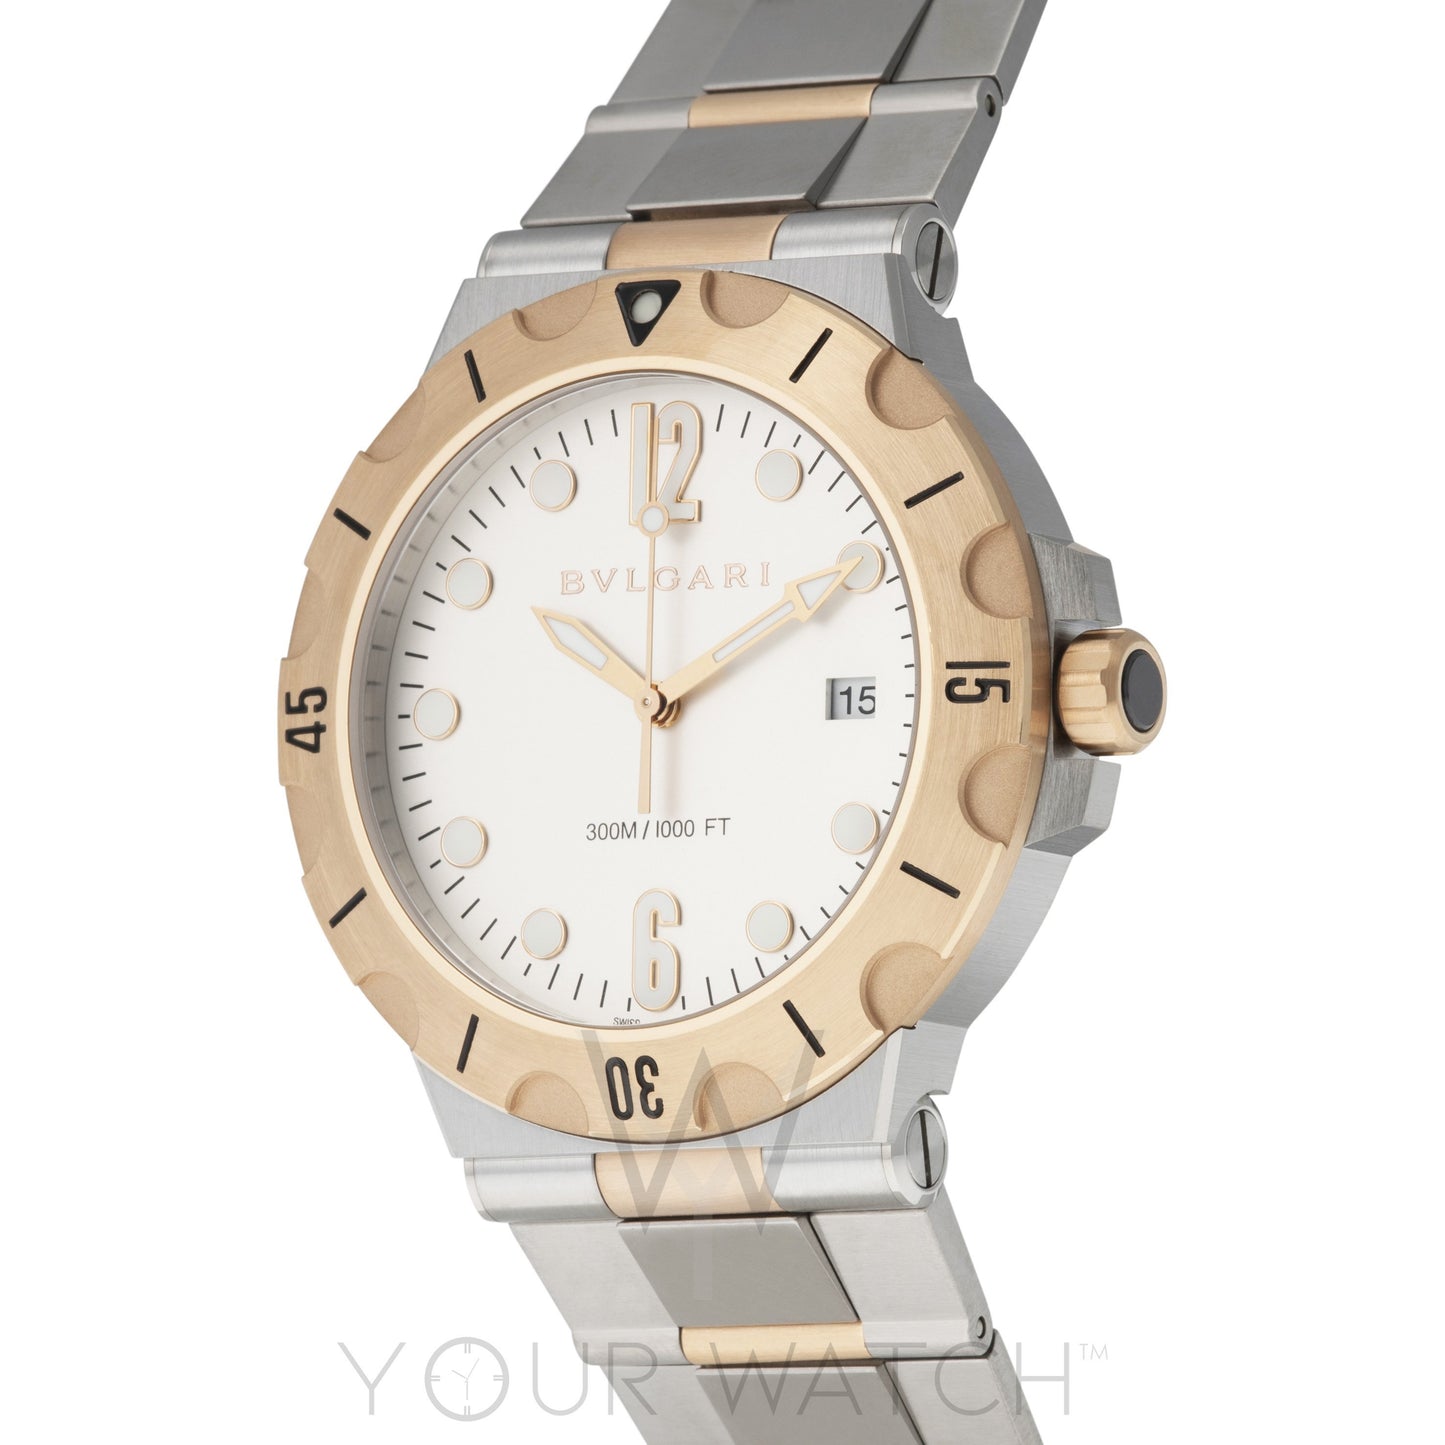 Bvlgari Diagono Scuba Professional Automatic Men's Watch 102325